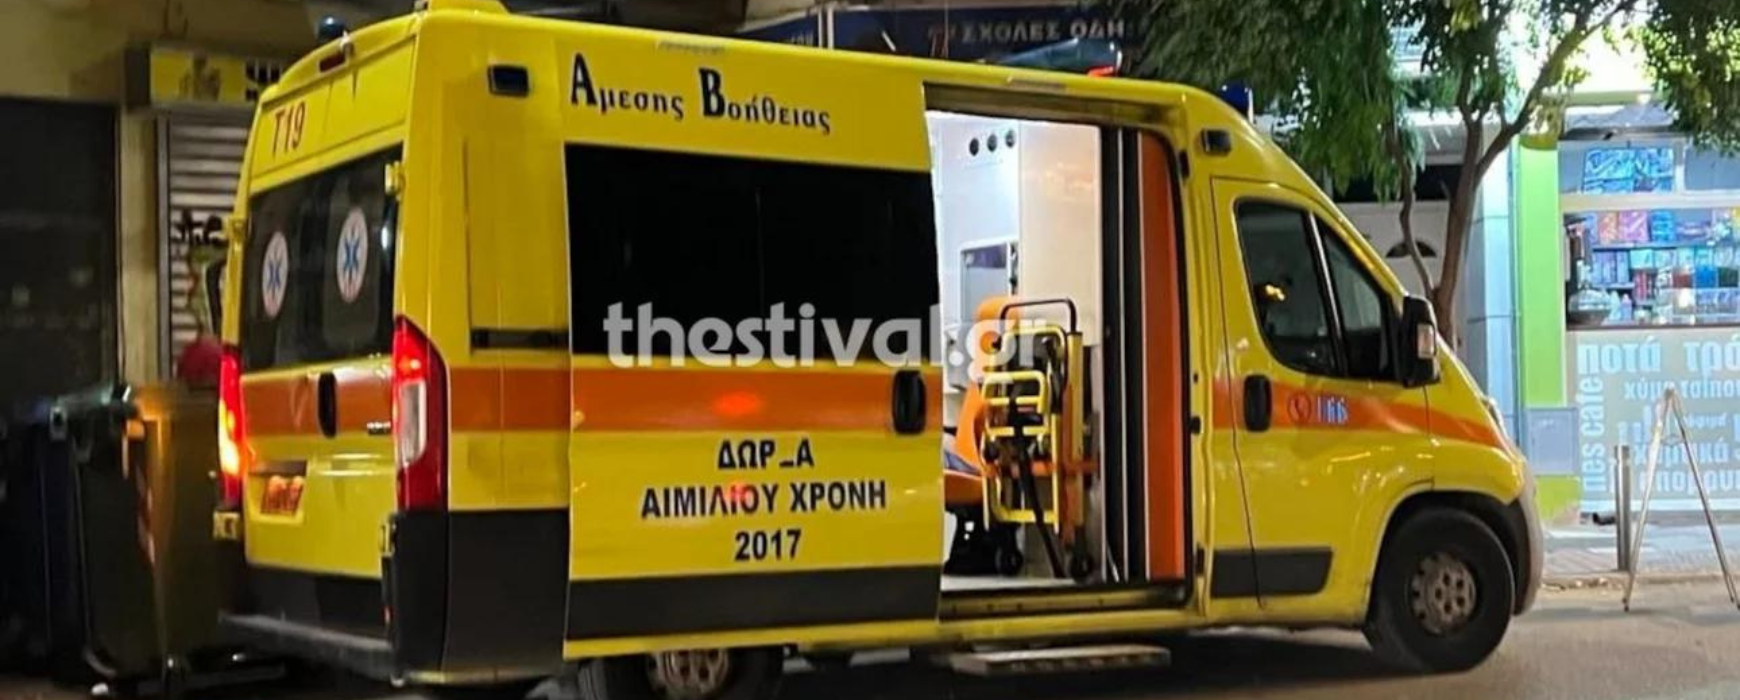 Σοκ στη Θεσσαλονίκη: 19χρονη έπεσε στο κενό από τον 2ο όροφο πολυκατοικίας – Νοσηλεύεται τραυματισμένη